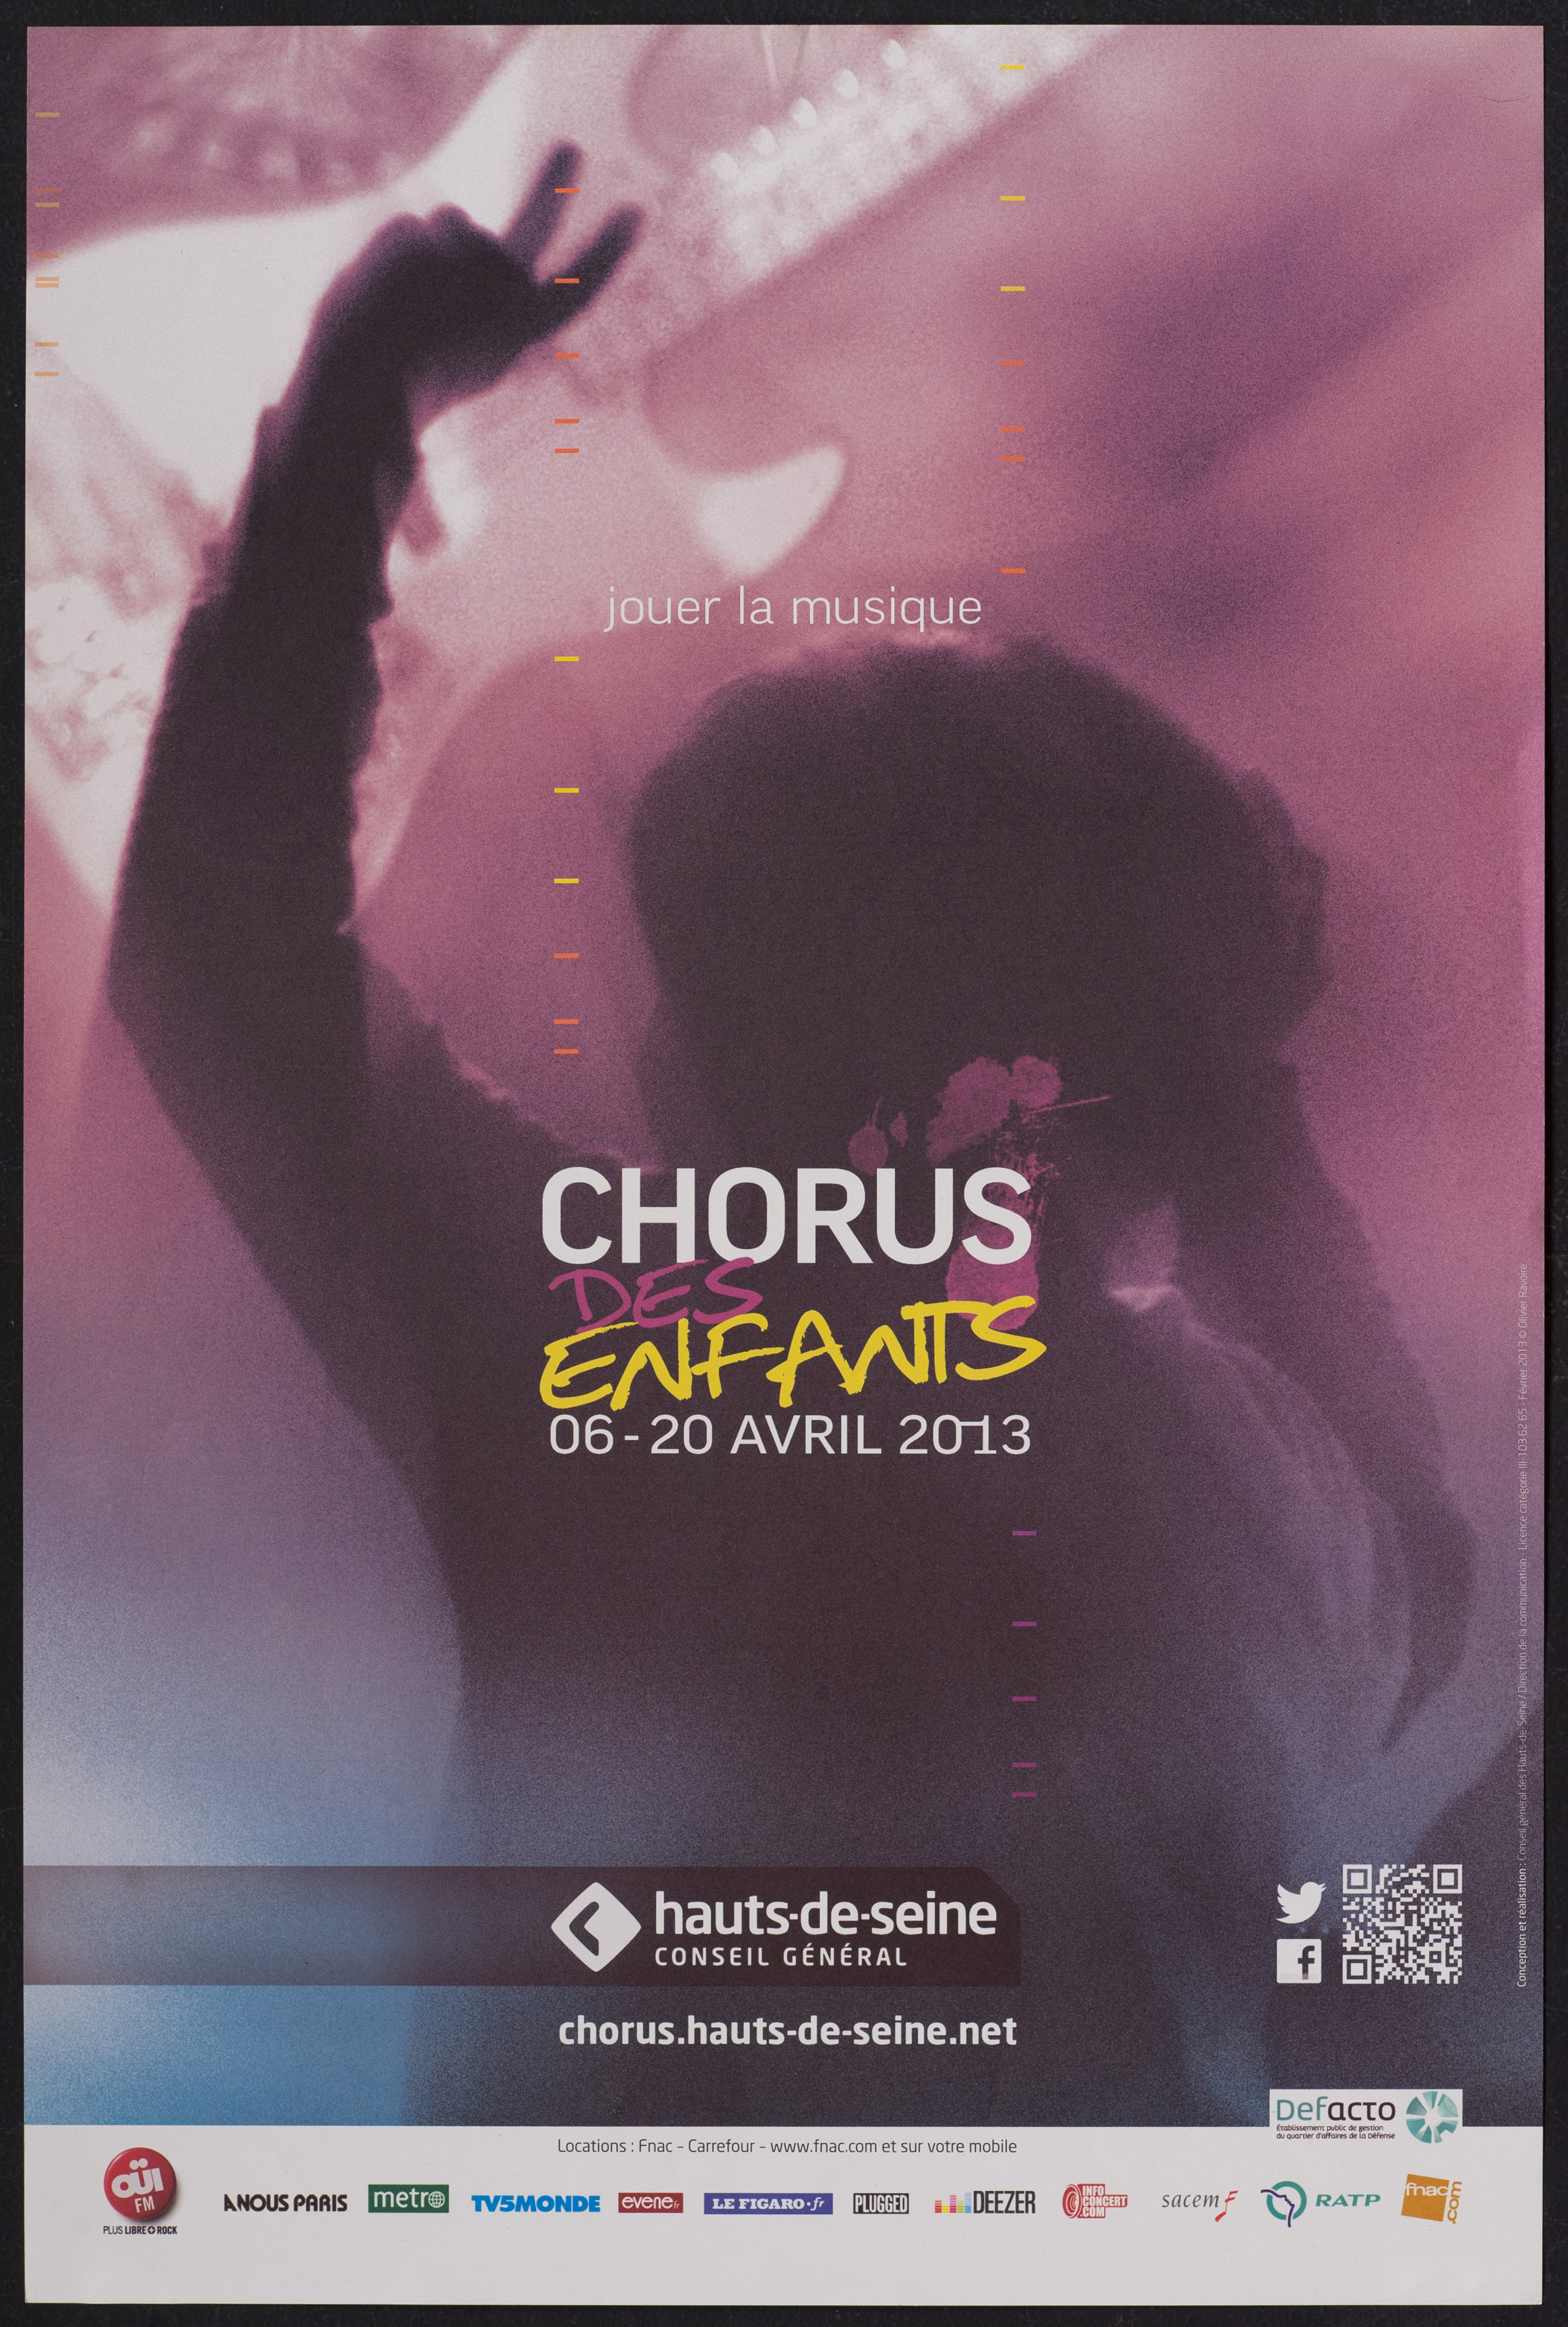 Jouer la musique. Chorus des enfants 6-20 avril 2013 /photo Olivier Ravoire. - CG 92, 2013. - 1 affiche ill. coul., 60 x 40 cm.